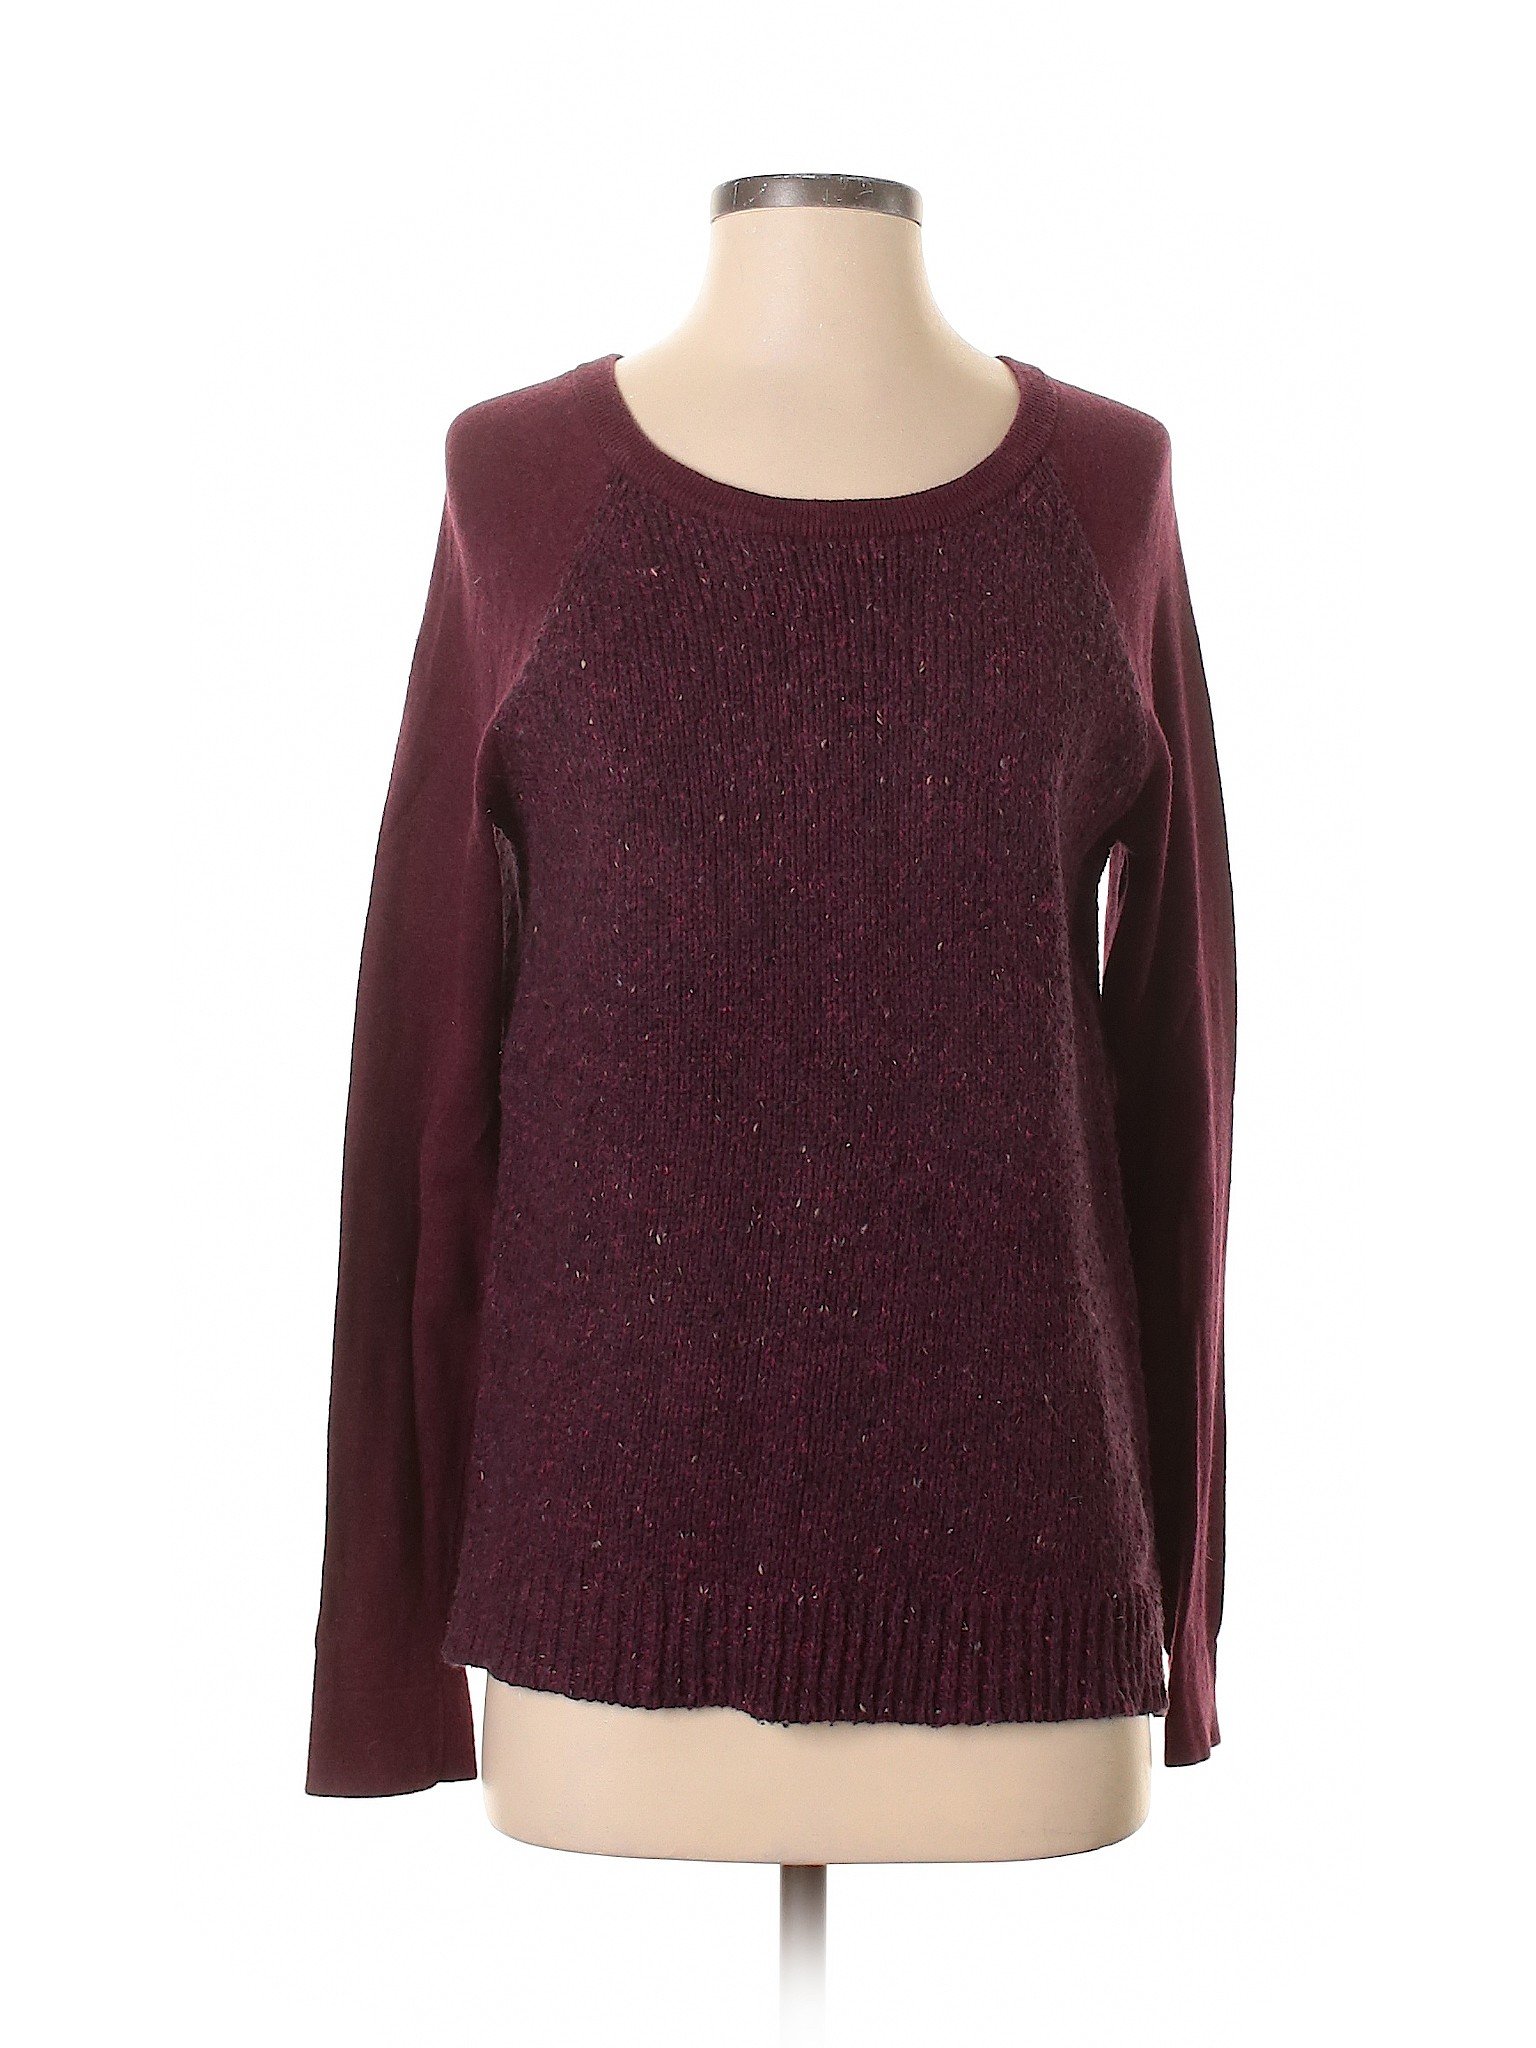 Cato Women Purple Pullover Sweater S | eBay